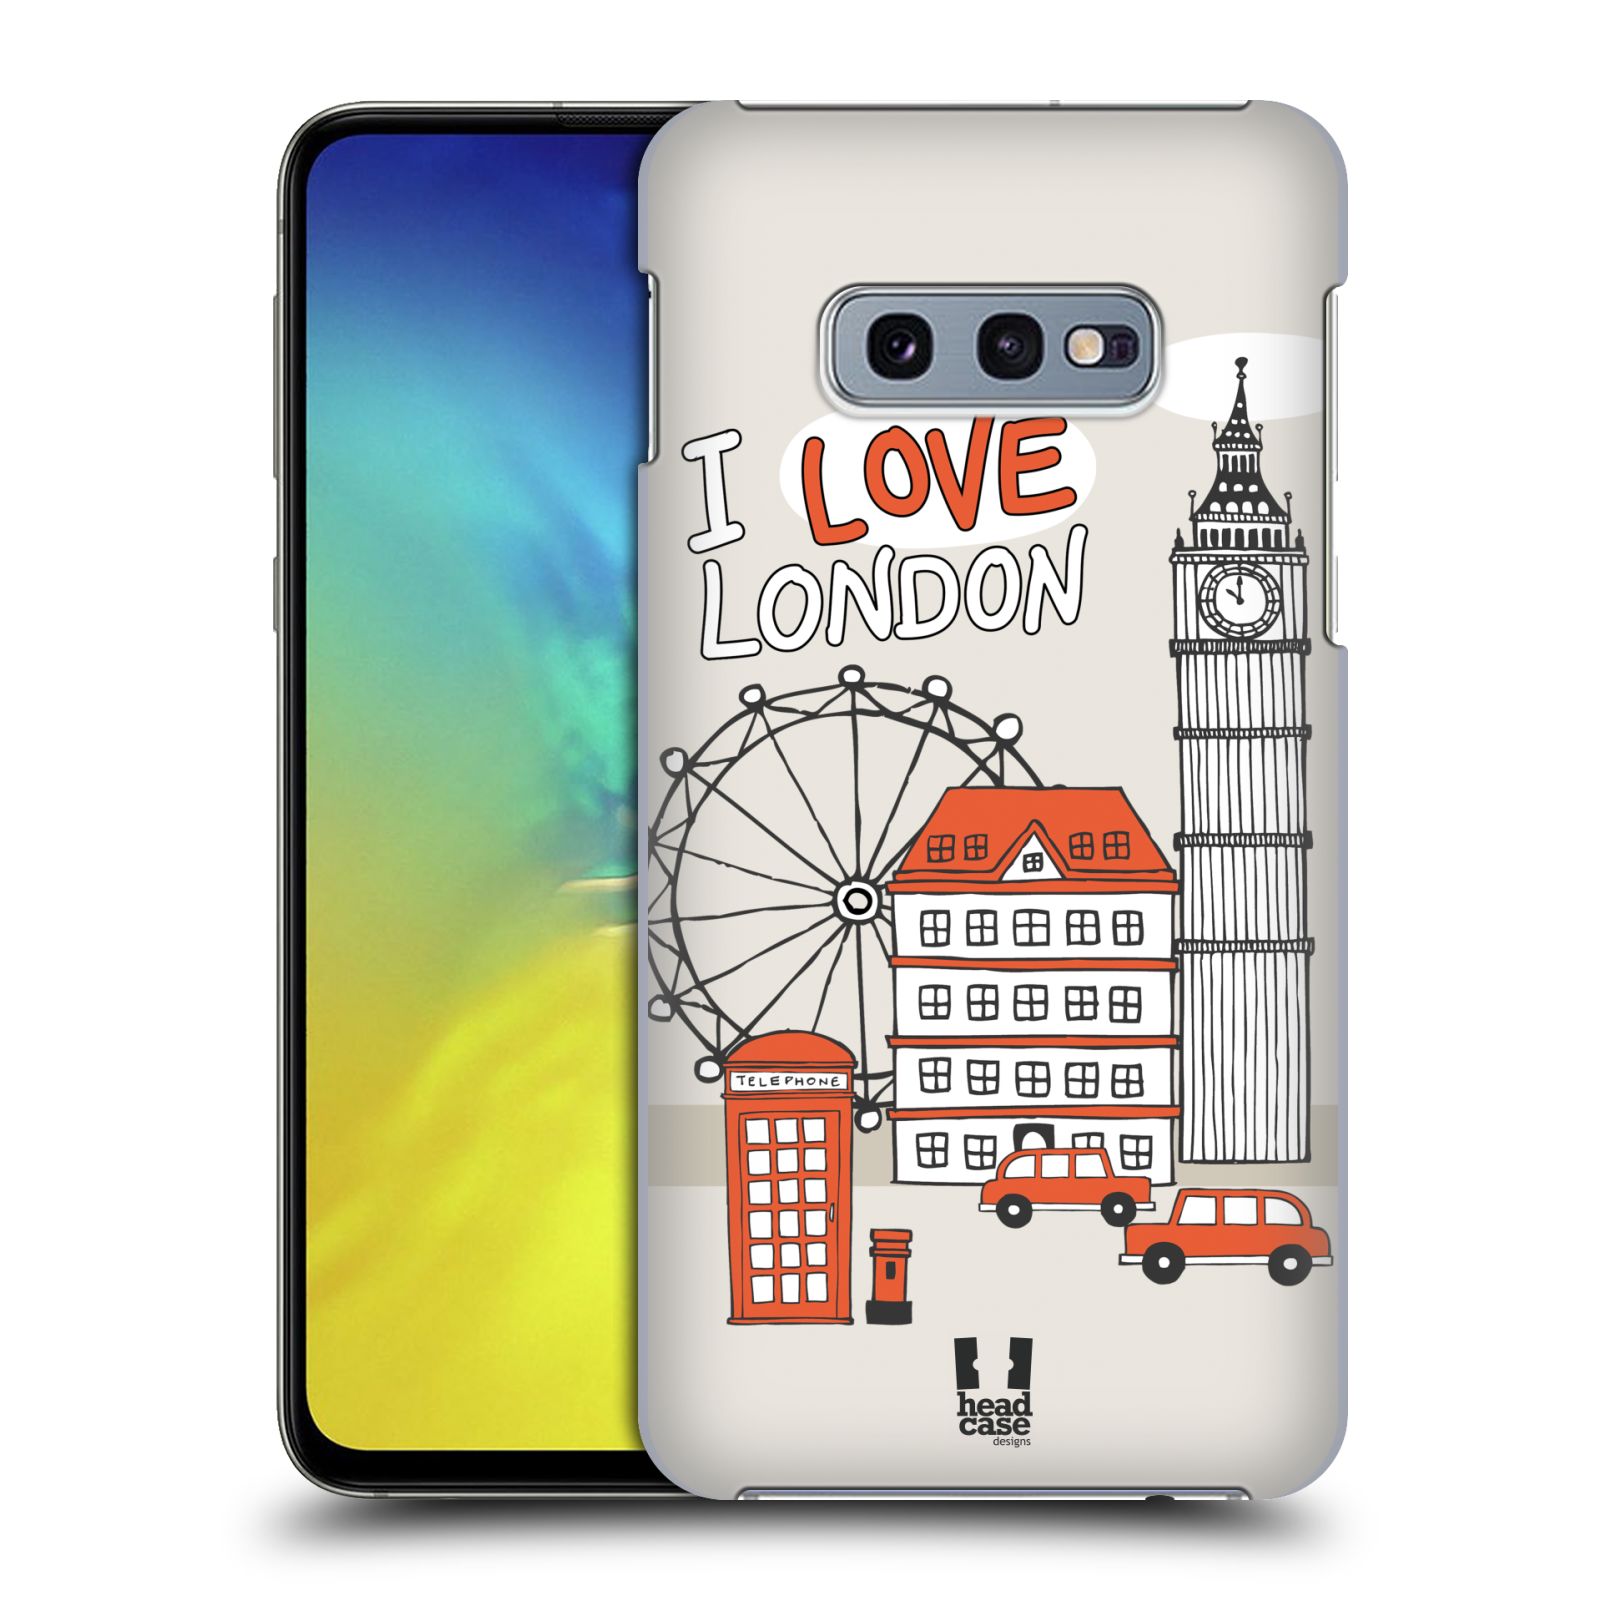 Pouzdro na mobil Samsung Galaxy S10e - HEAD CASE - vzor Kreslená městečka ČERVENÁ, Anglie, Londýn, I LOVE LONDON